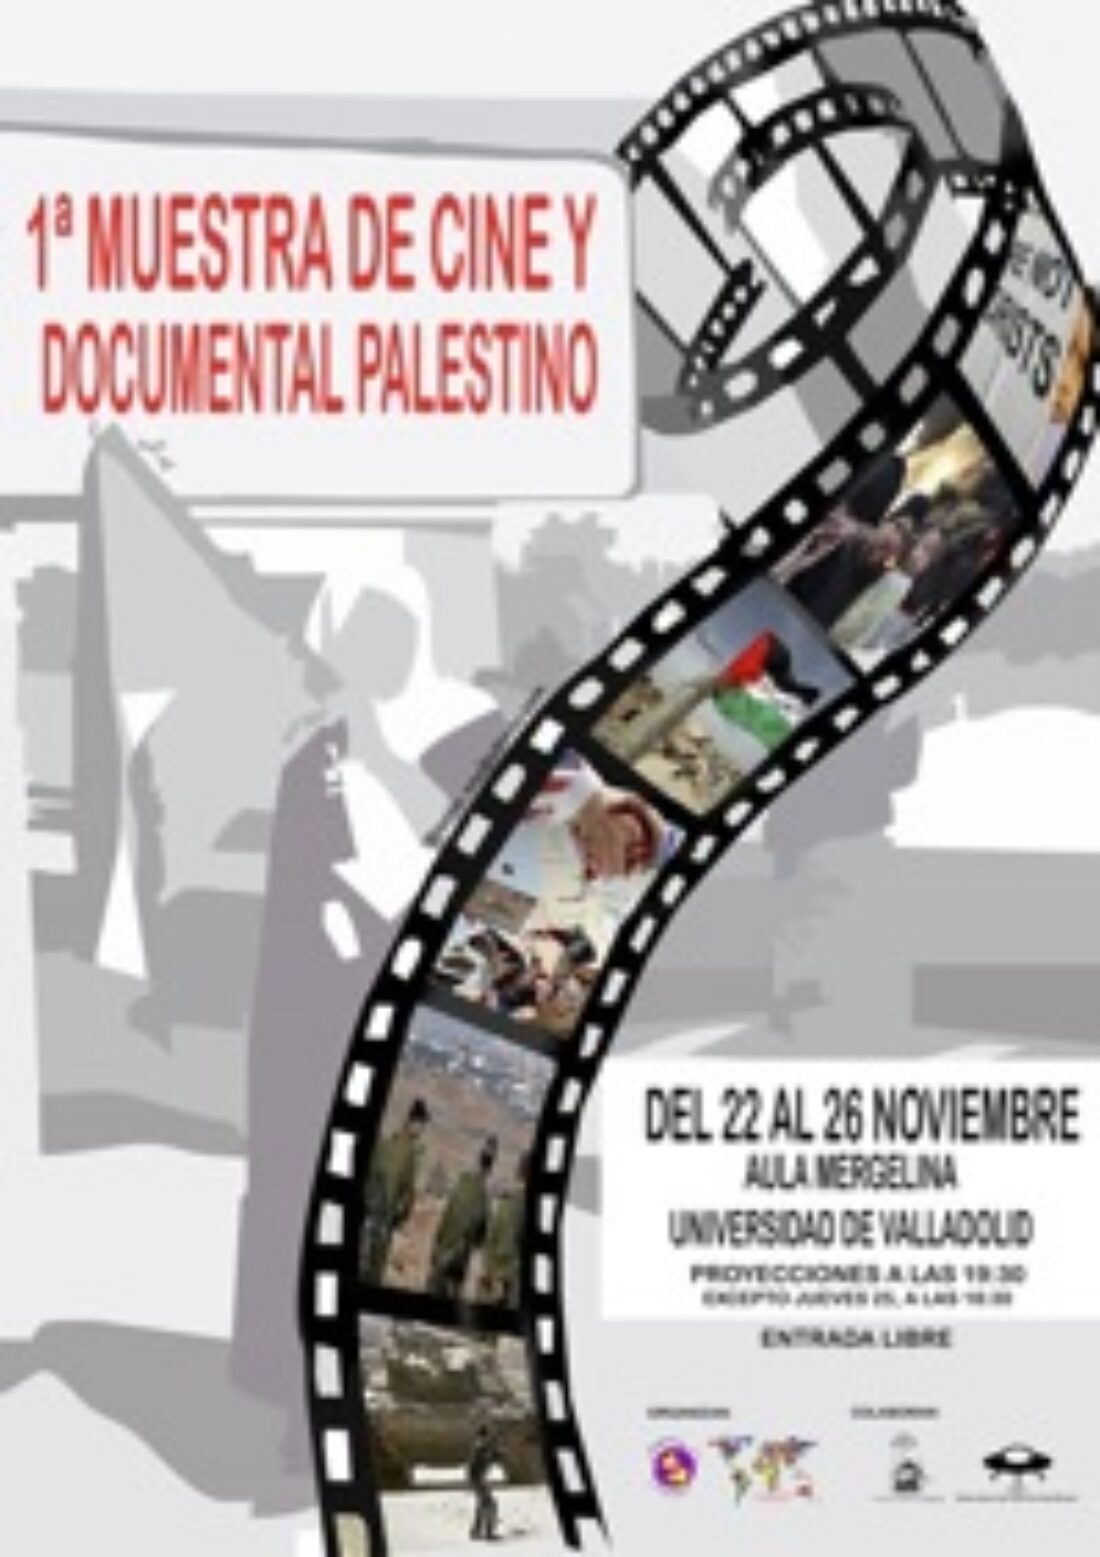 22 al 26 nov, Valladolid : 1ª Muestra de cine y documental palestino